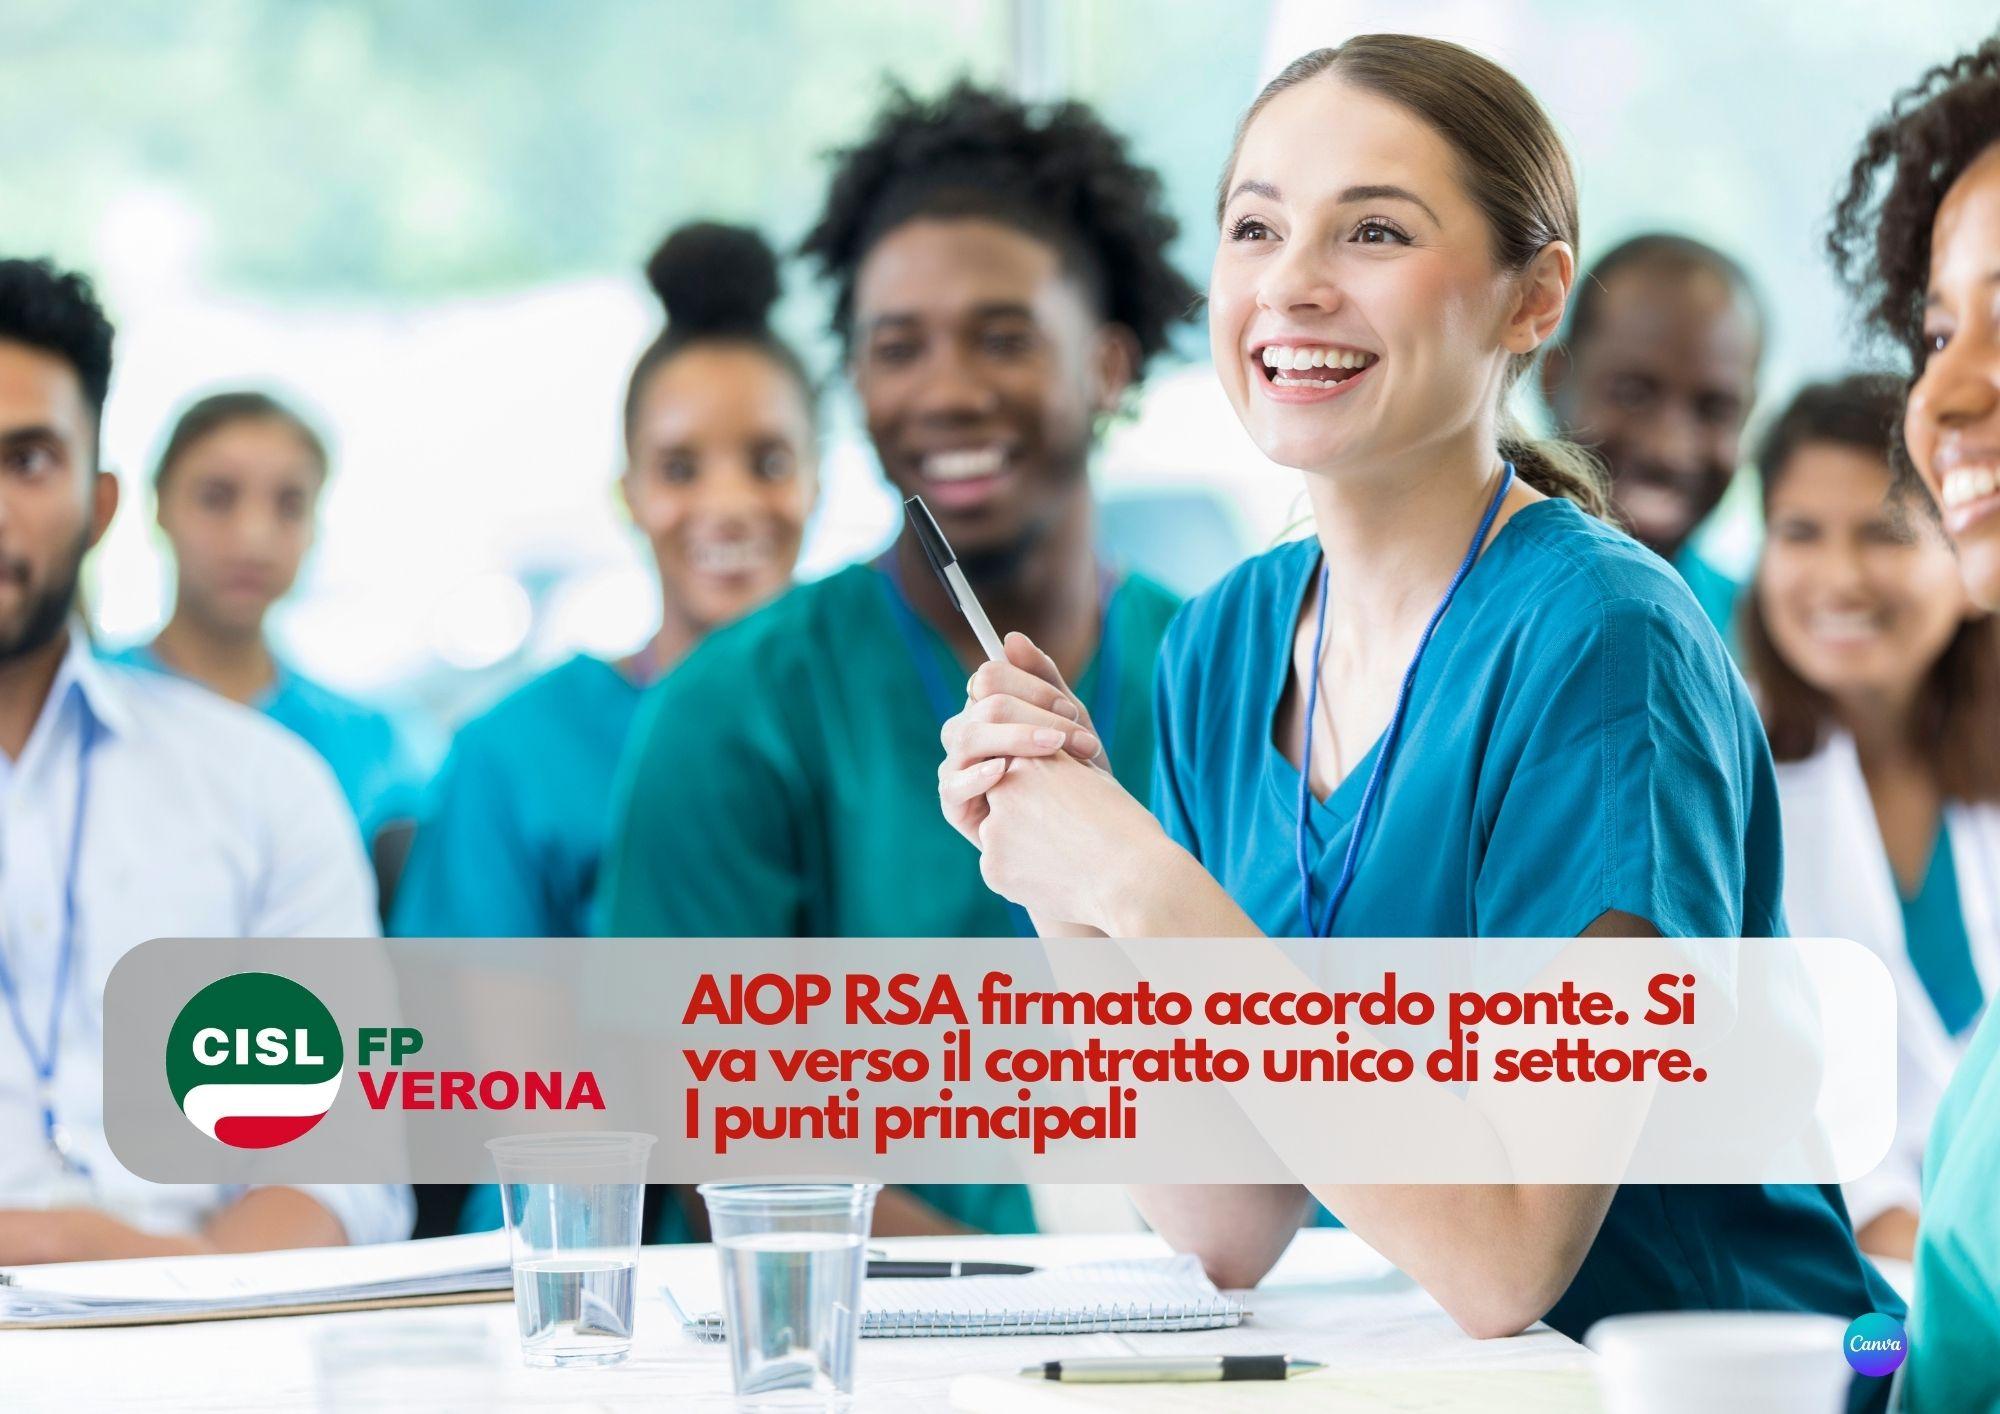 CISL FP Verona. AIOP RSA firmato accordo ponte. Si va verso il contratto unico di settore. I punti principali